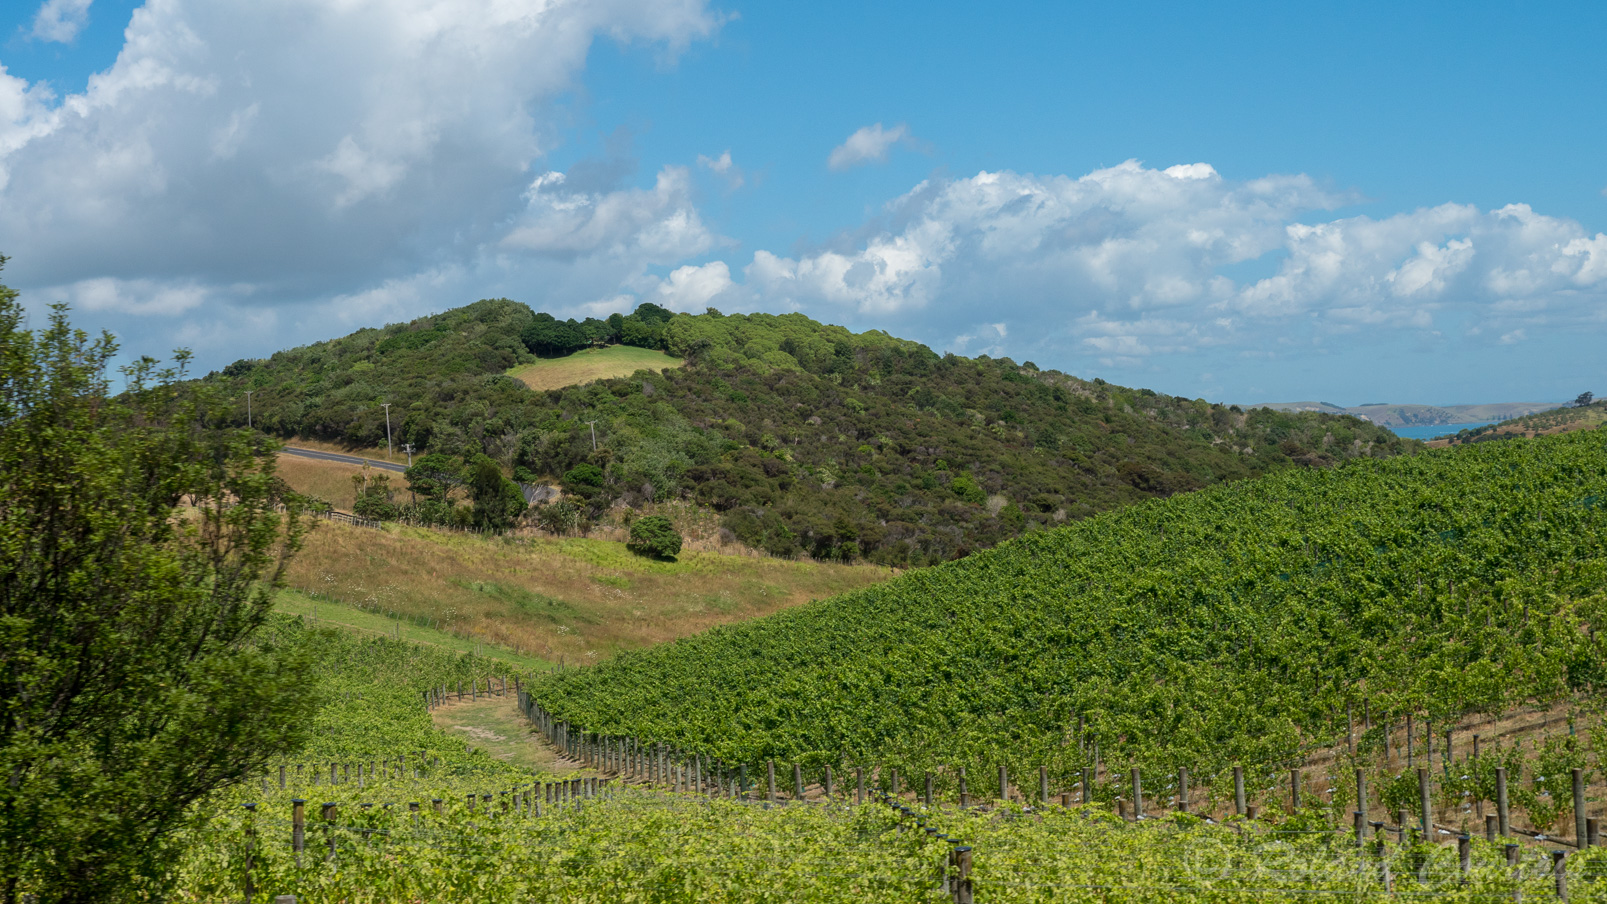 C'est l'île du vin avec de nombreux vignobles réputés.